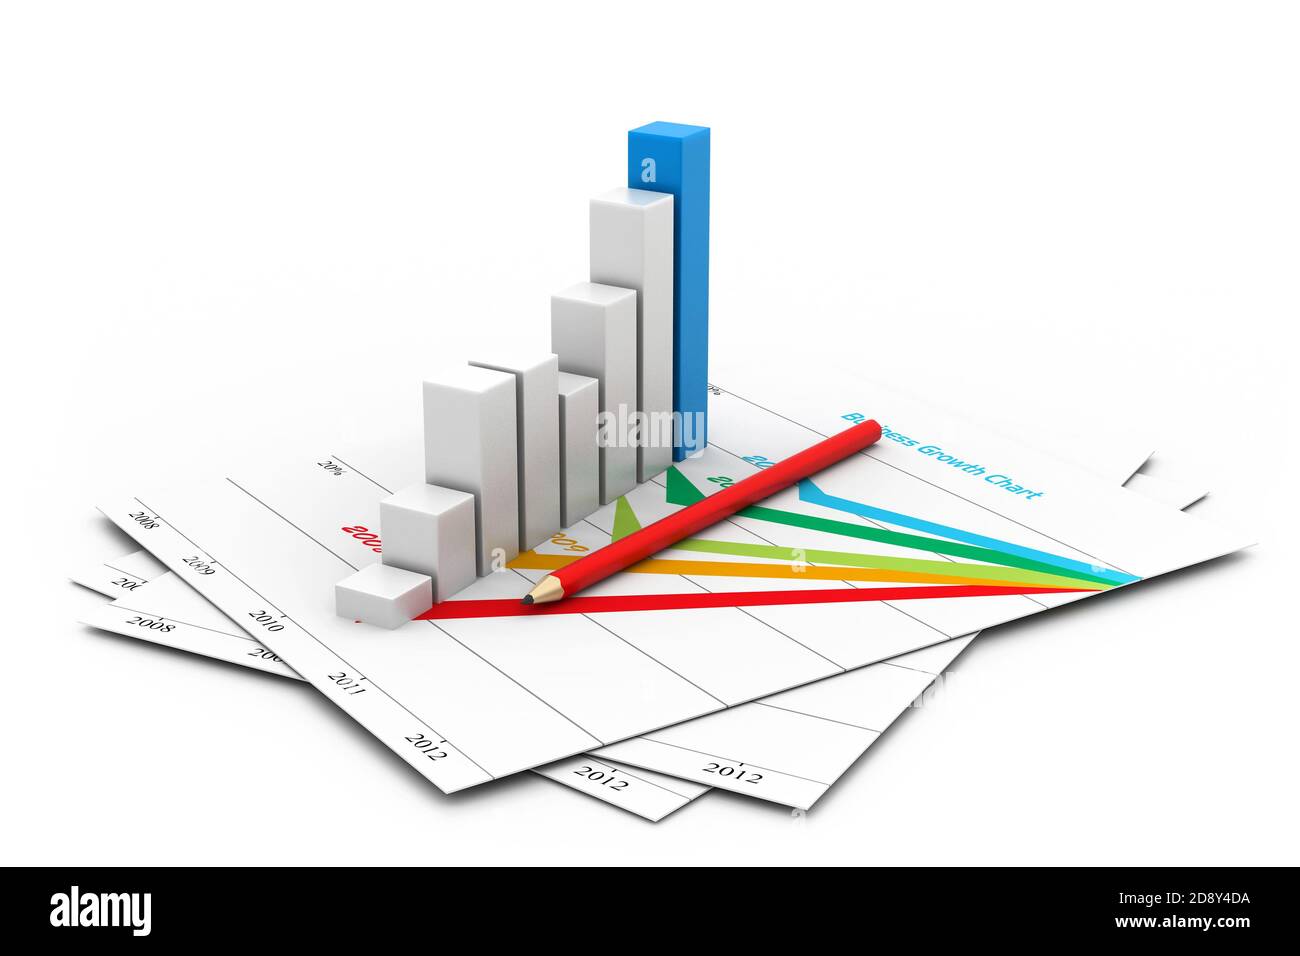 Tableau d'affaires avec une croissance graphique Banque D'Images